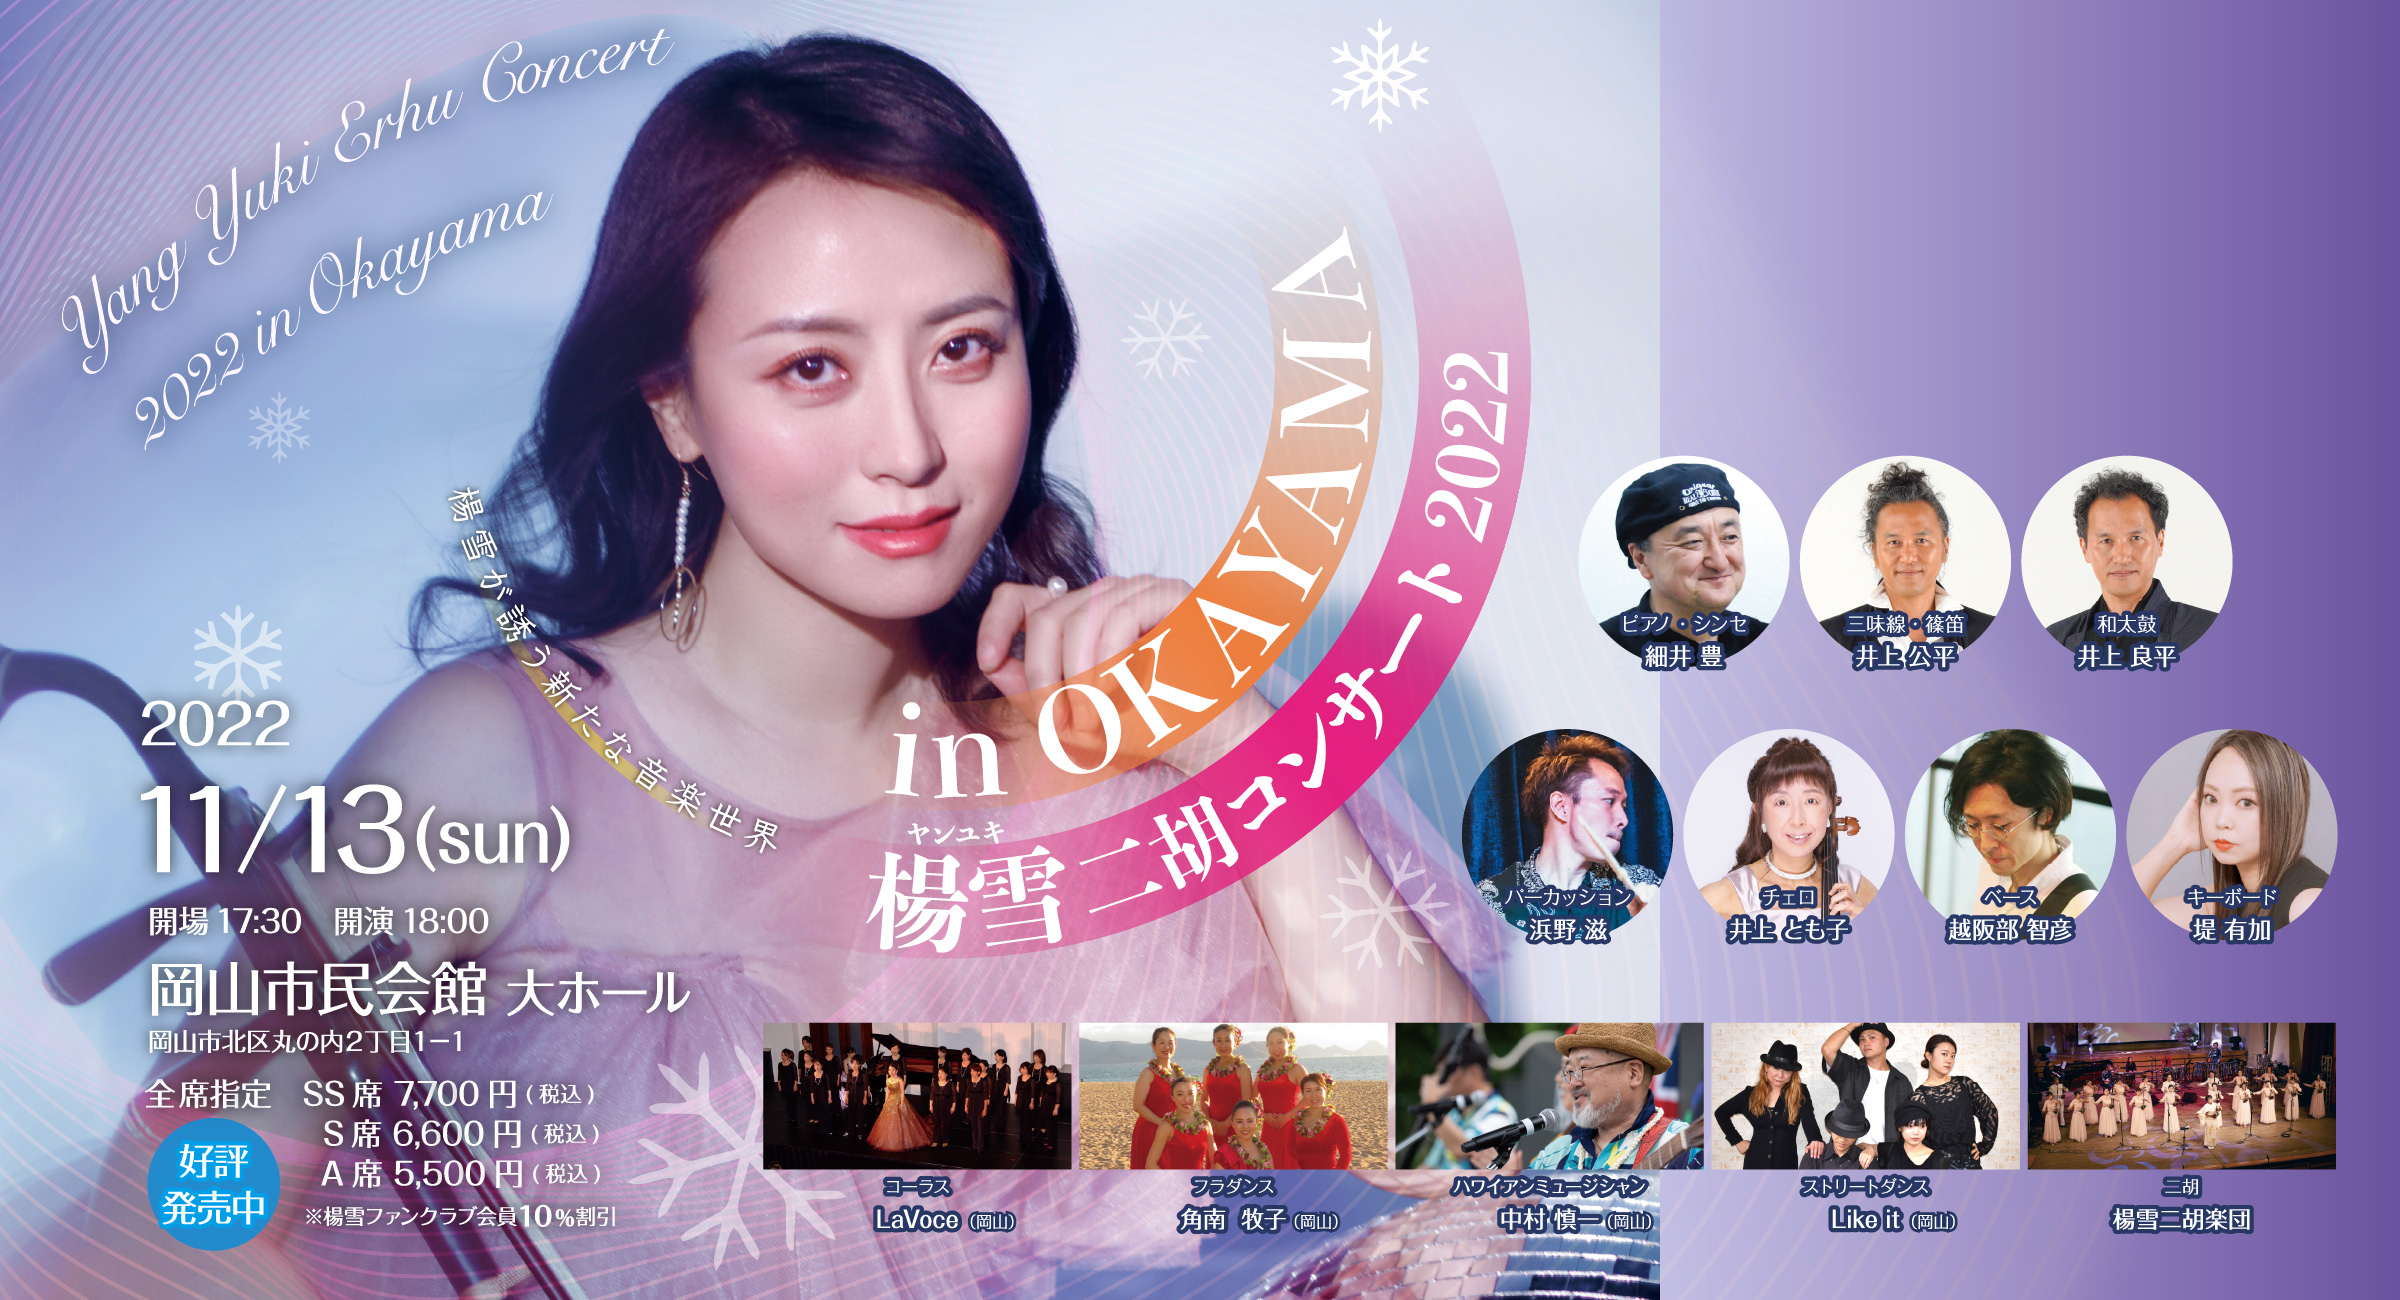 楊雪コンサート2022 in OKAYAMA-2022年11月13日（日曜日）岡山市民会館大ホール